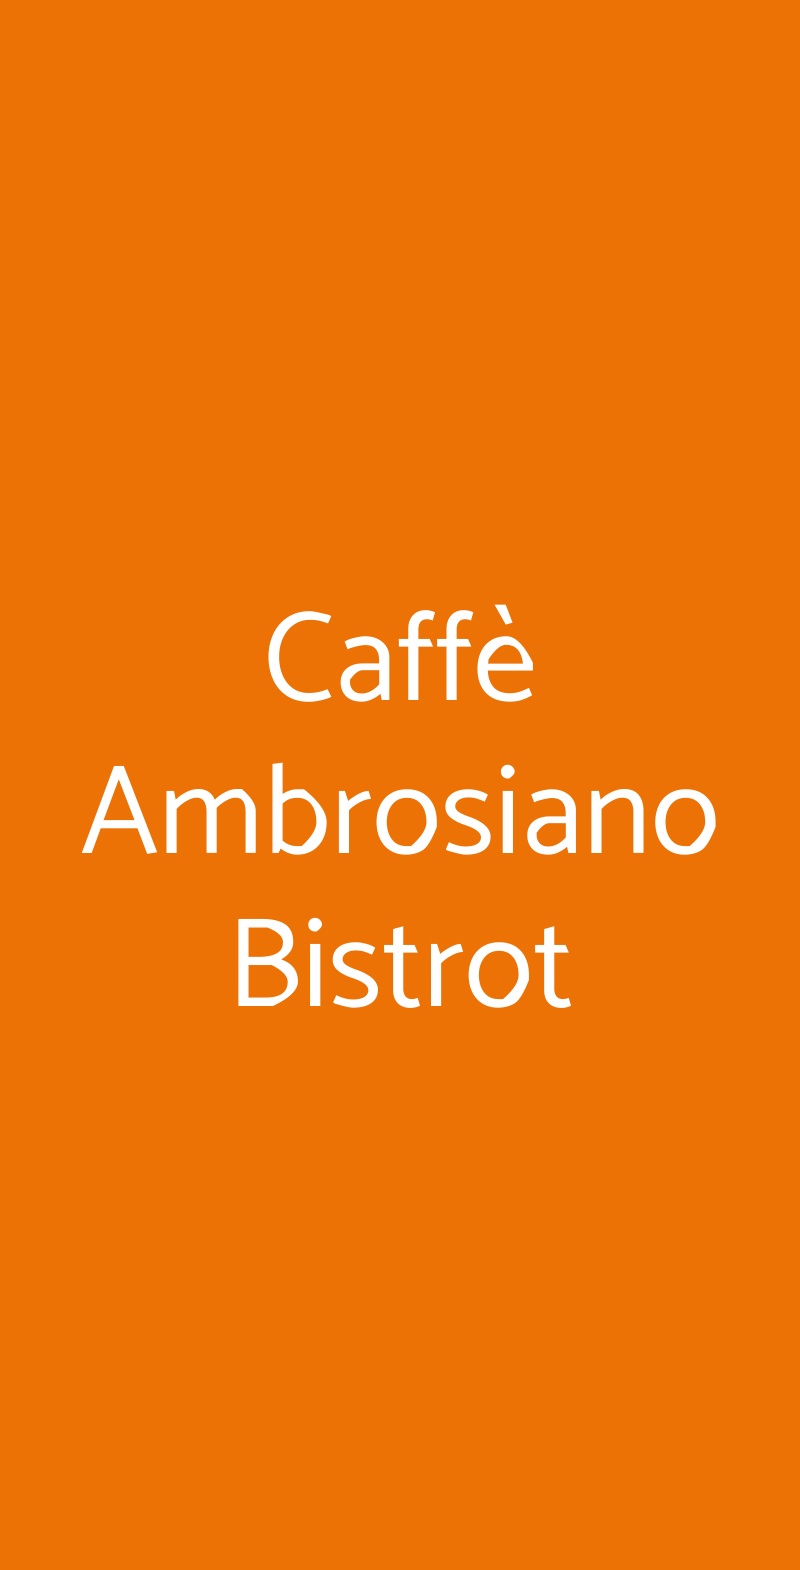 Caffè Ambrosiano Bistrot Milano menù 1 pagina